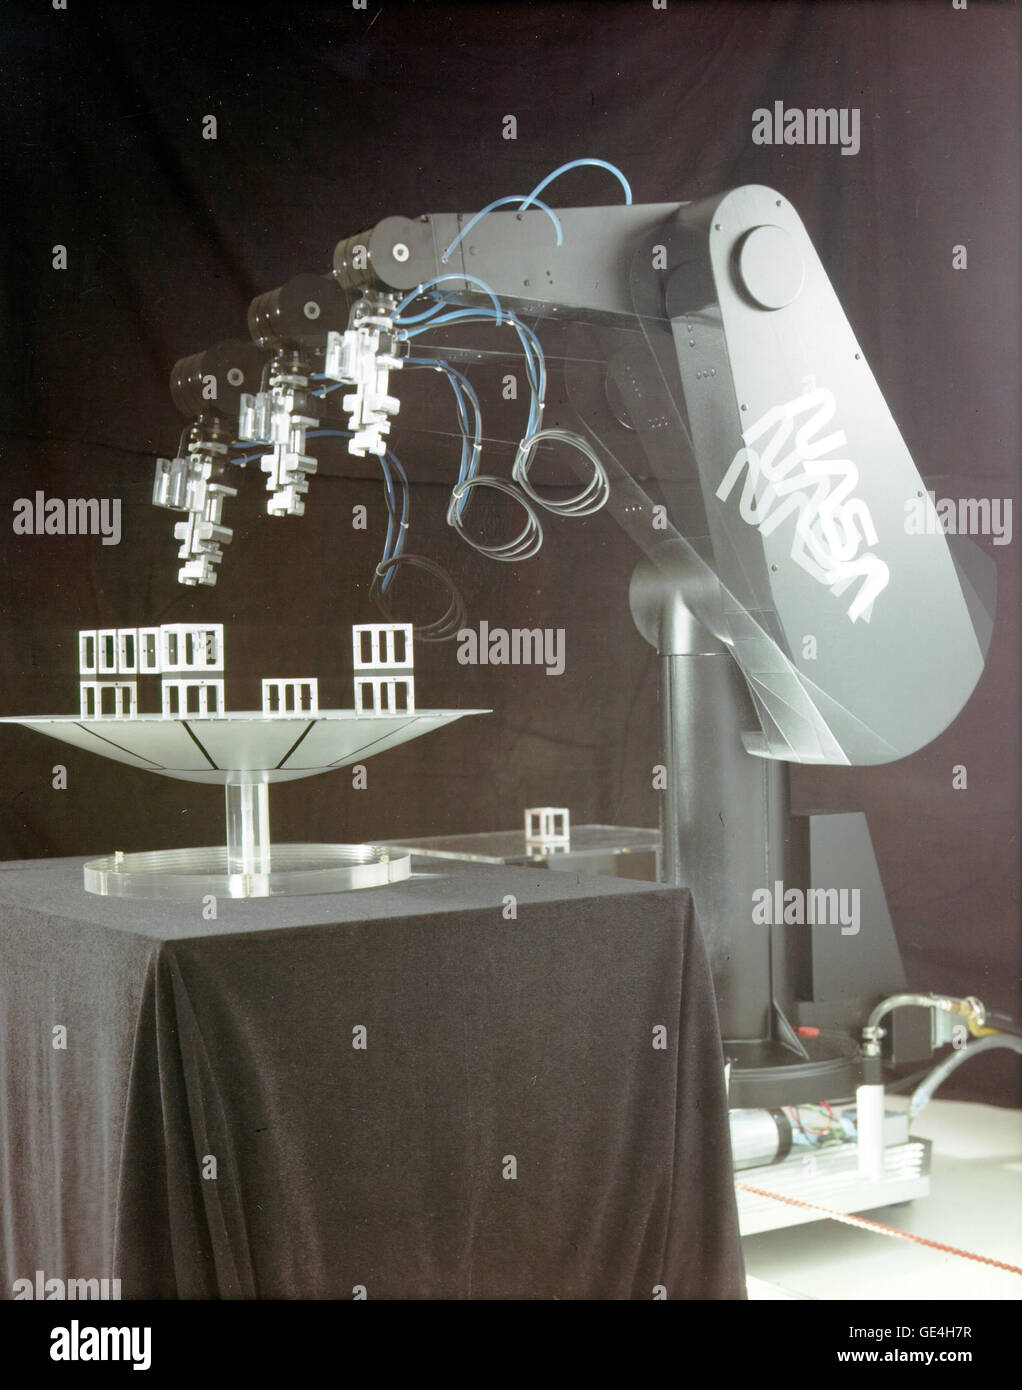 (2 aprile 1990) Il Puma robotico di braccio di sensore per uso in realtà virtuale di sviluppo e studi presso la NASA Ames Research Center, Mountain View, California. Immagine # : AC90-0187-1 Foto Stock